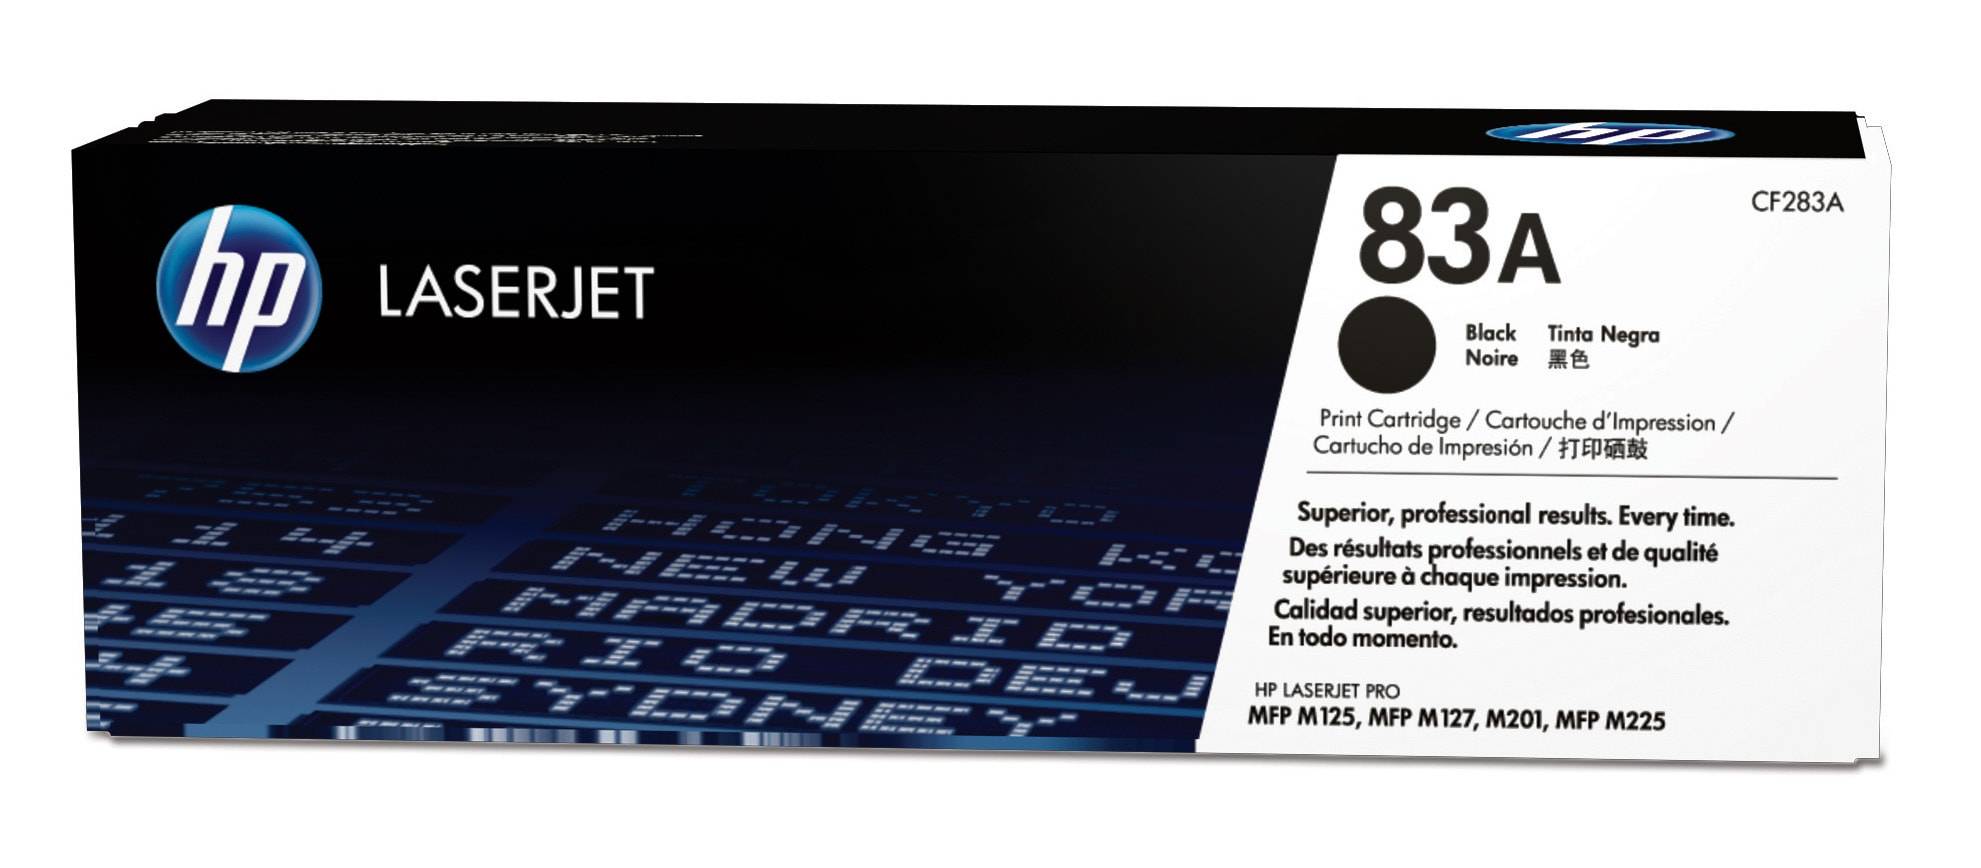 Rca Informatique - Image du produit : TONER CARTRIDGE HP 83A BLACK LASERJET